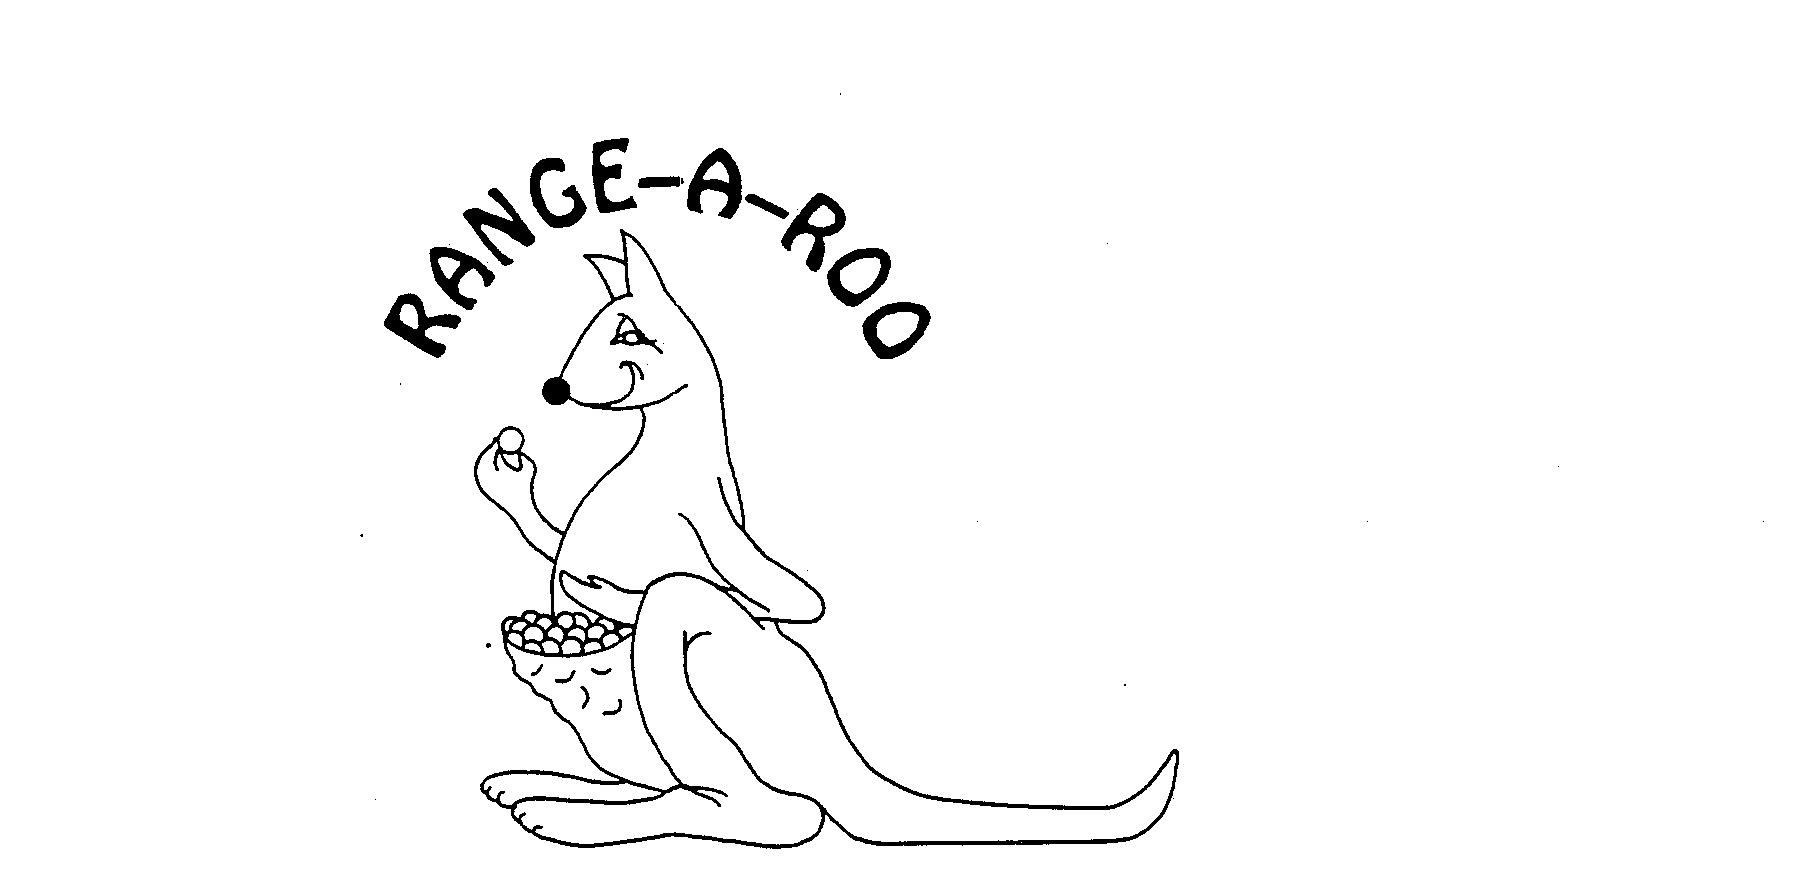  RANGE-A-ROO